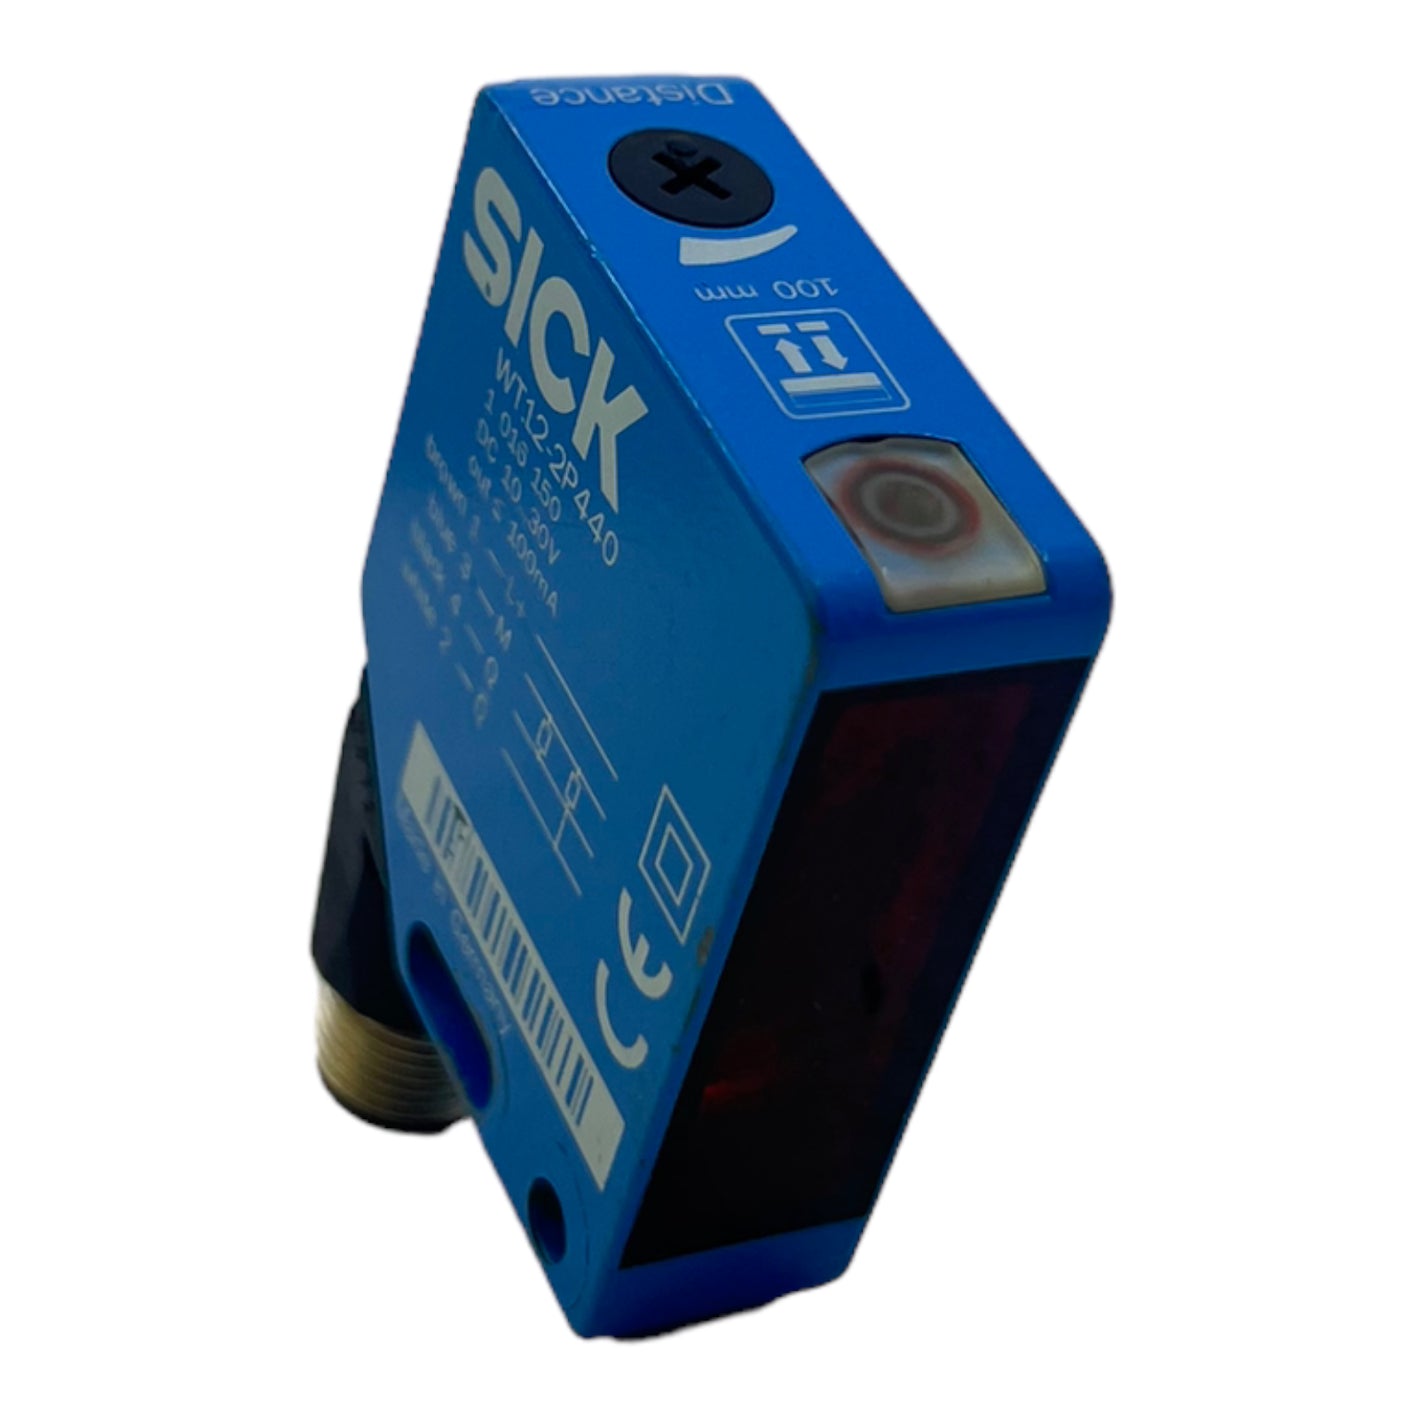 Sick WT12-2P440 reflection light button 1016150 10VDC…30VDC out 100mA light button 